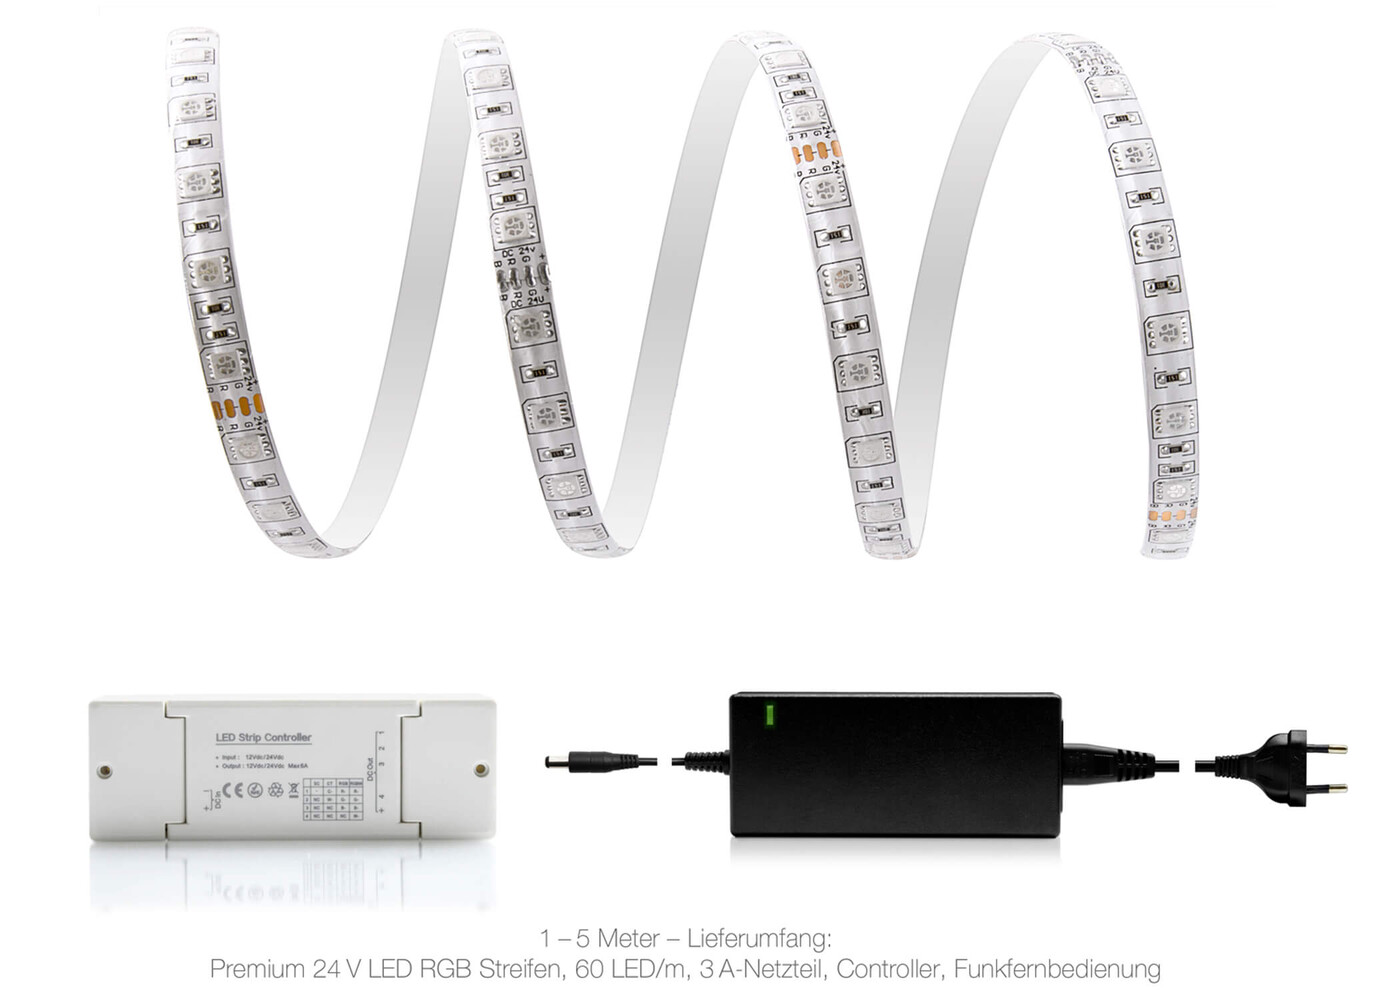 Hochwertiger Premium LED Streifen von LED Universum für perfekte Beleuchtung